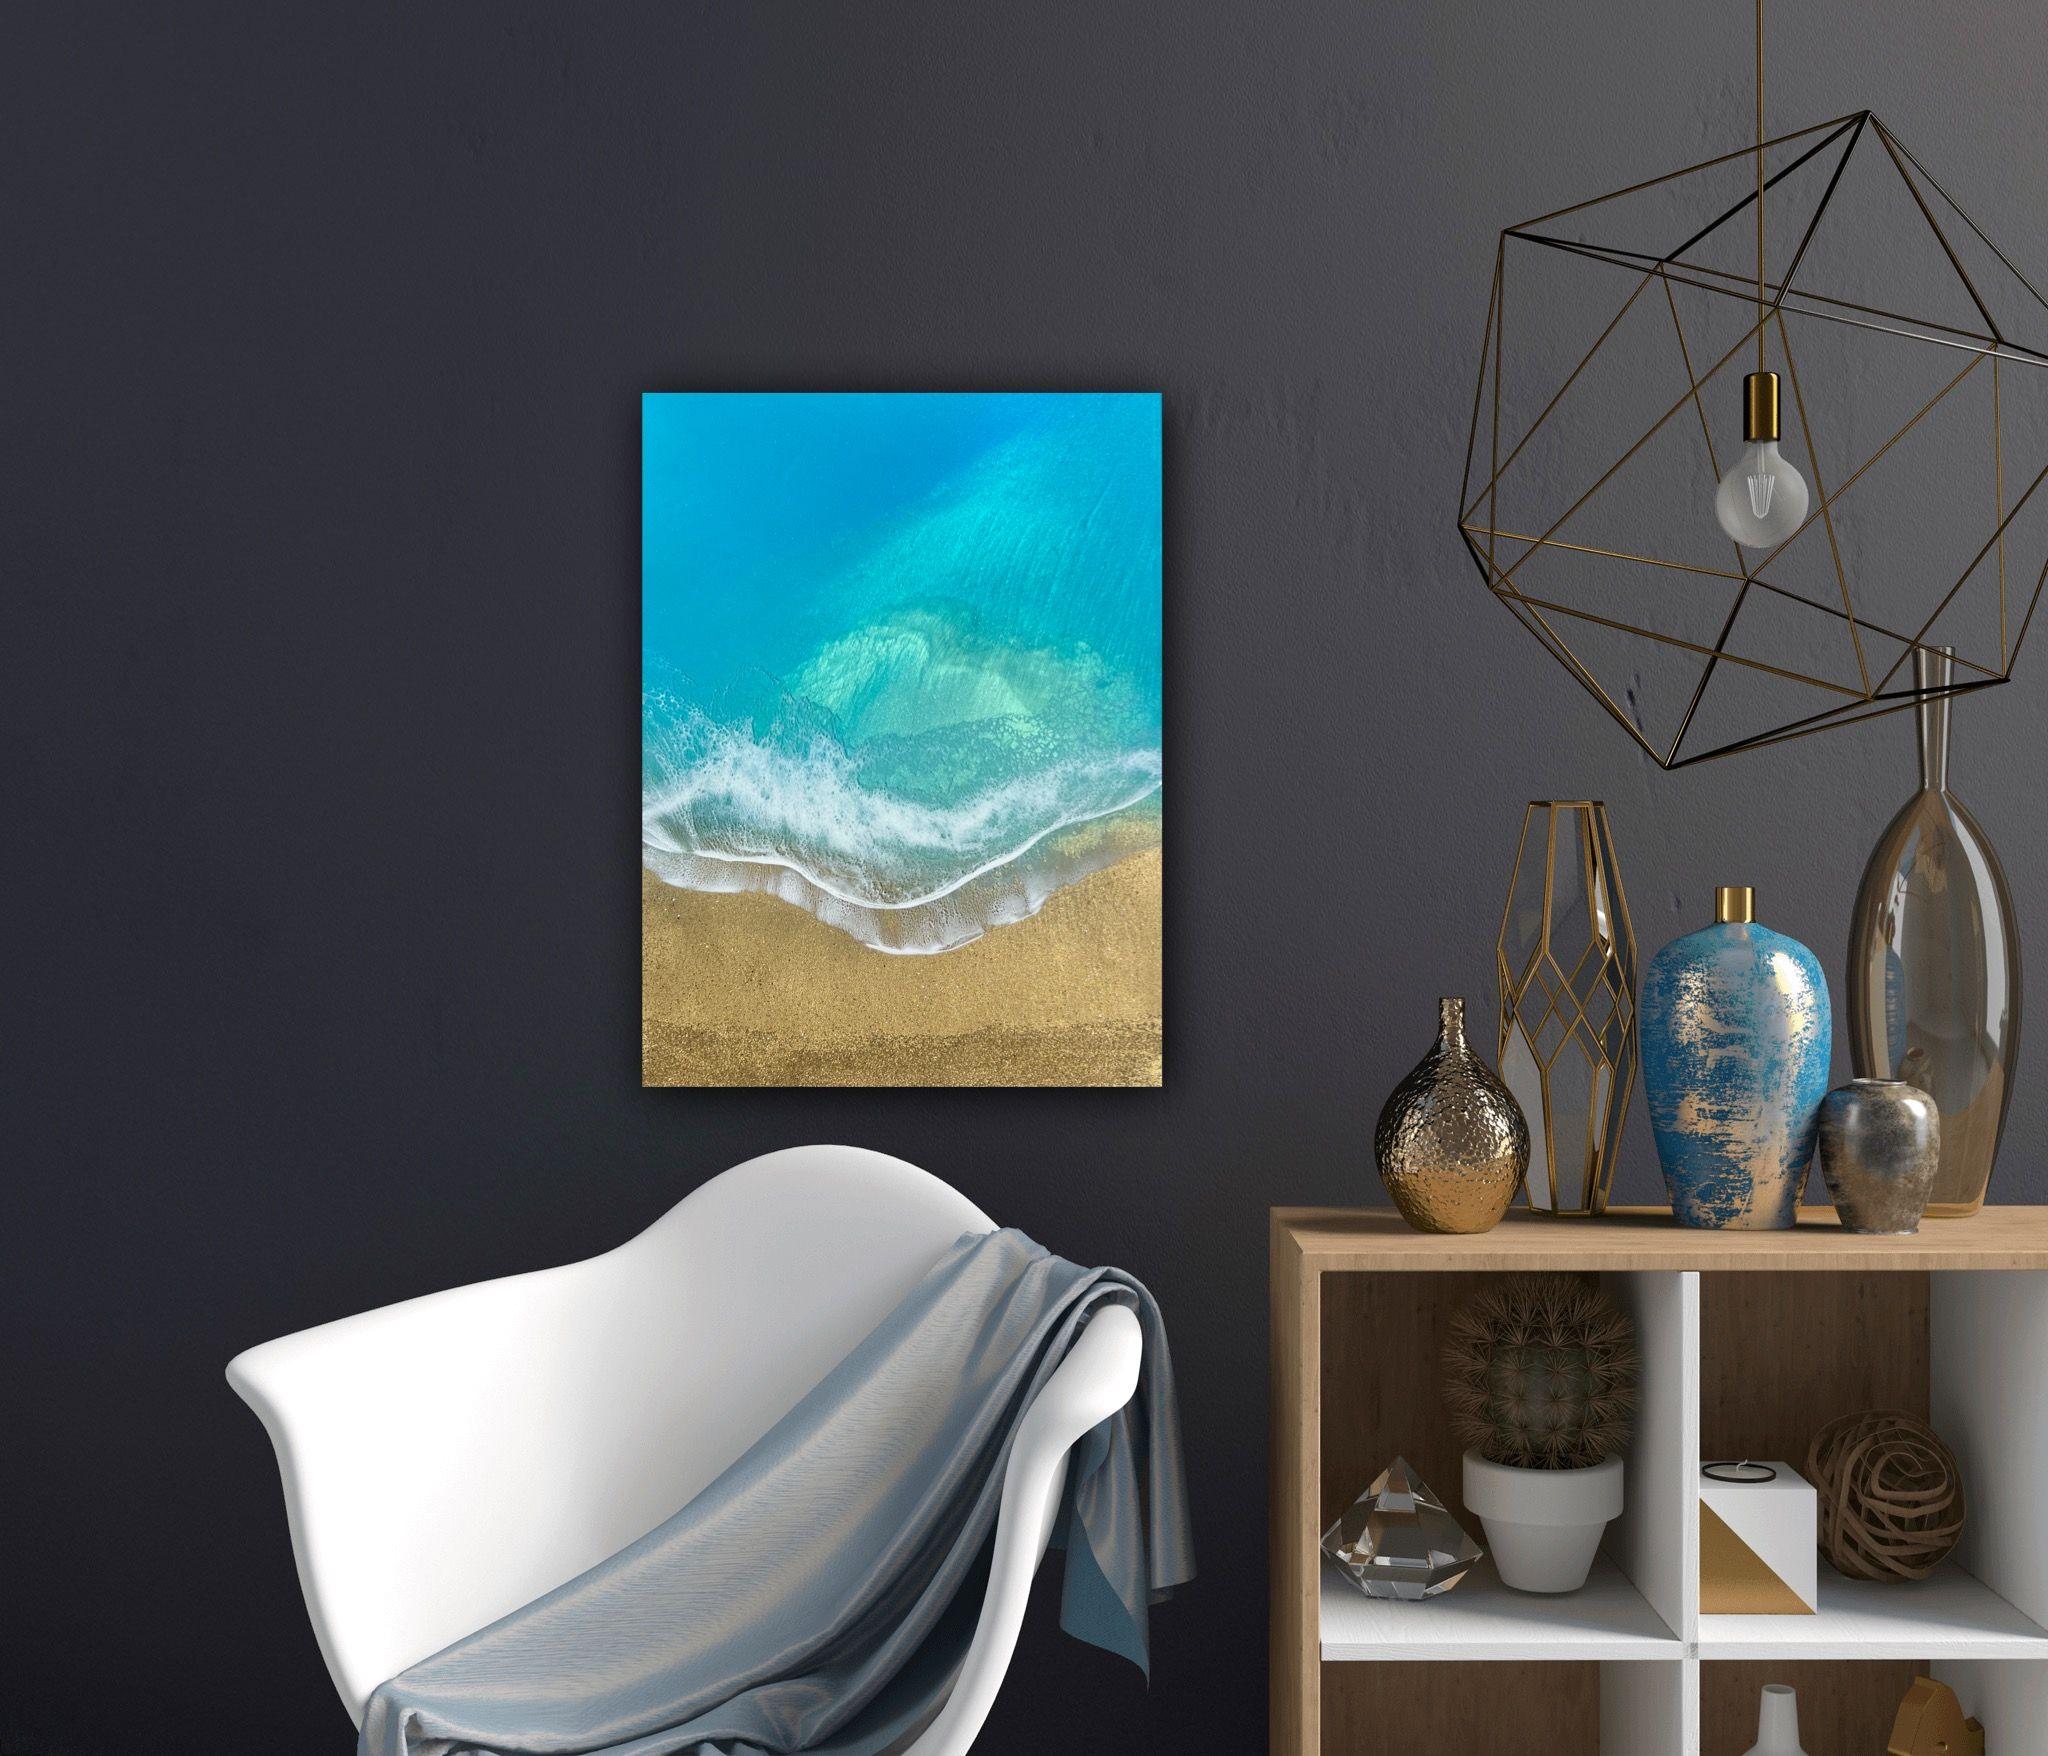 Une plage paisible, peinture sur toile acrylique - Photoréalisme Painting par Ana Hefco